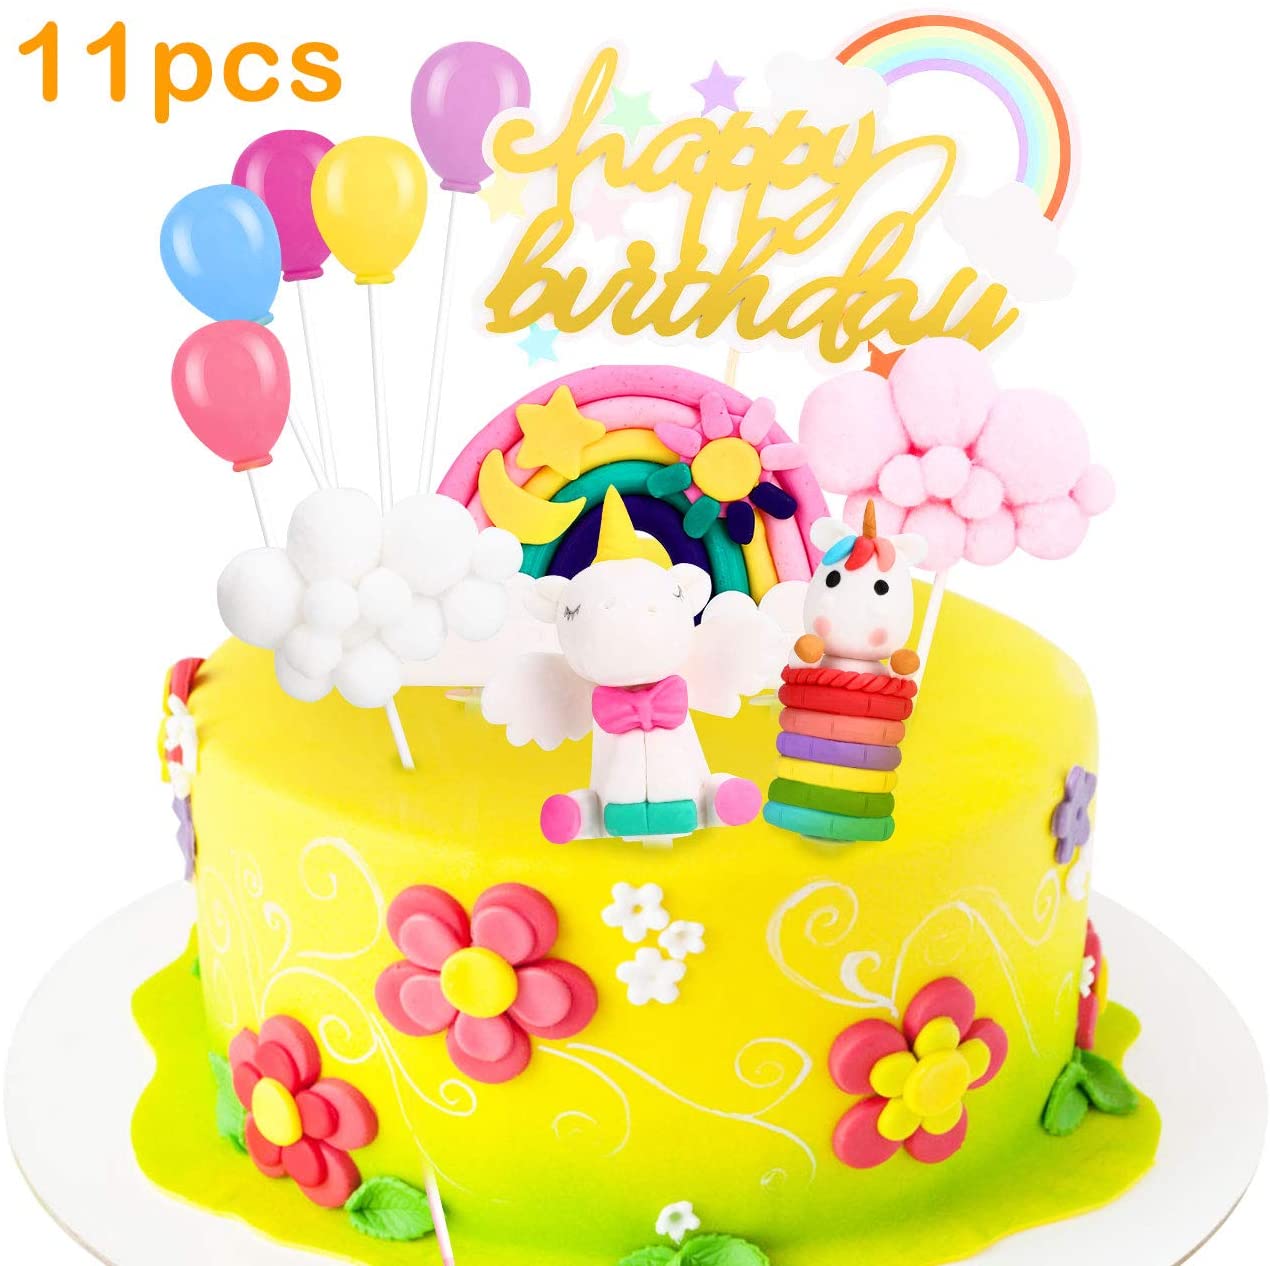 EACHPT Unicorno Cake Topper Kit, Torta Unicorno Decorazione Torta Unicorno  Nuvola Arcobaleno Palloncino Decorazioni per Torte di Compleanno Topper per